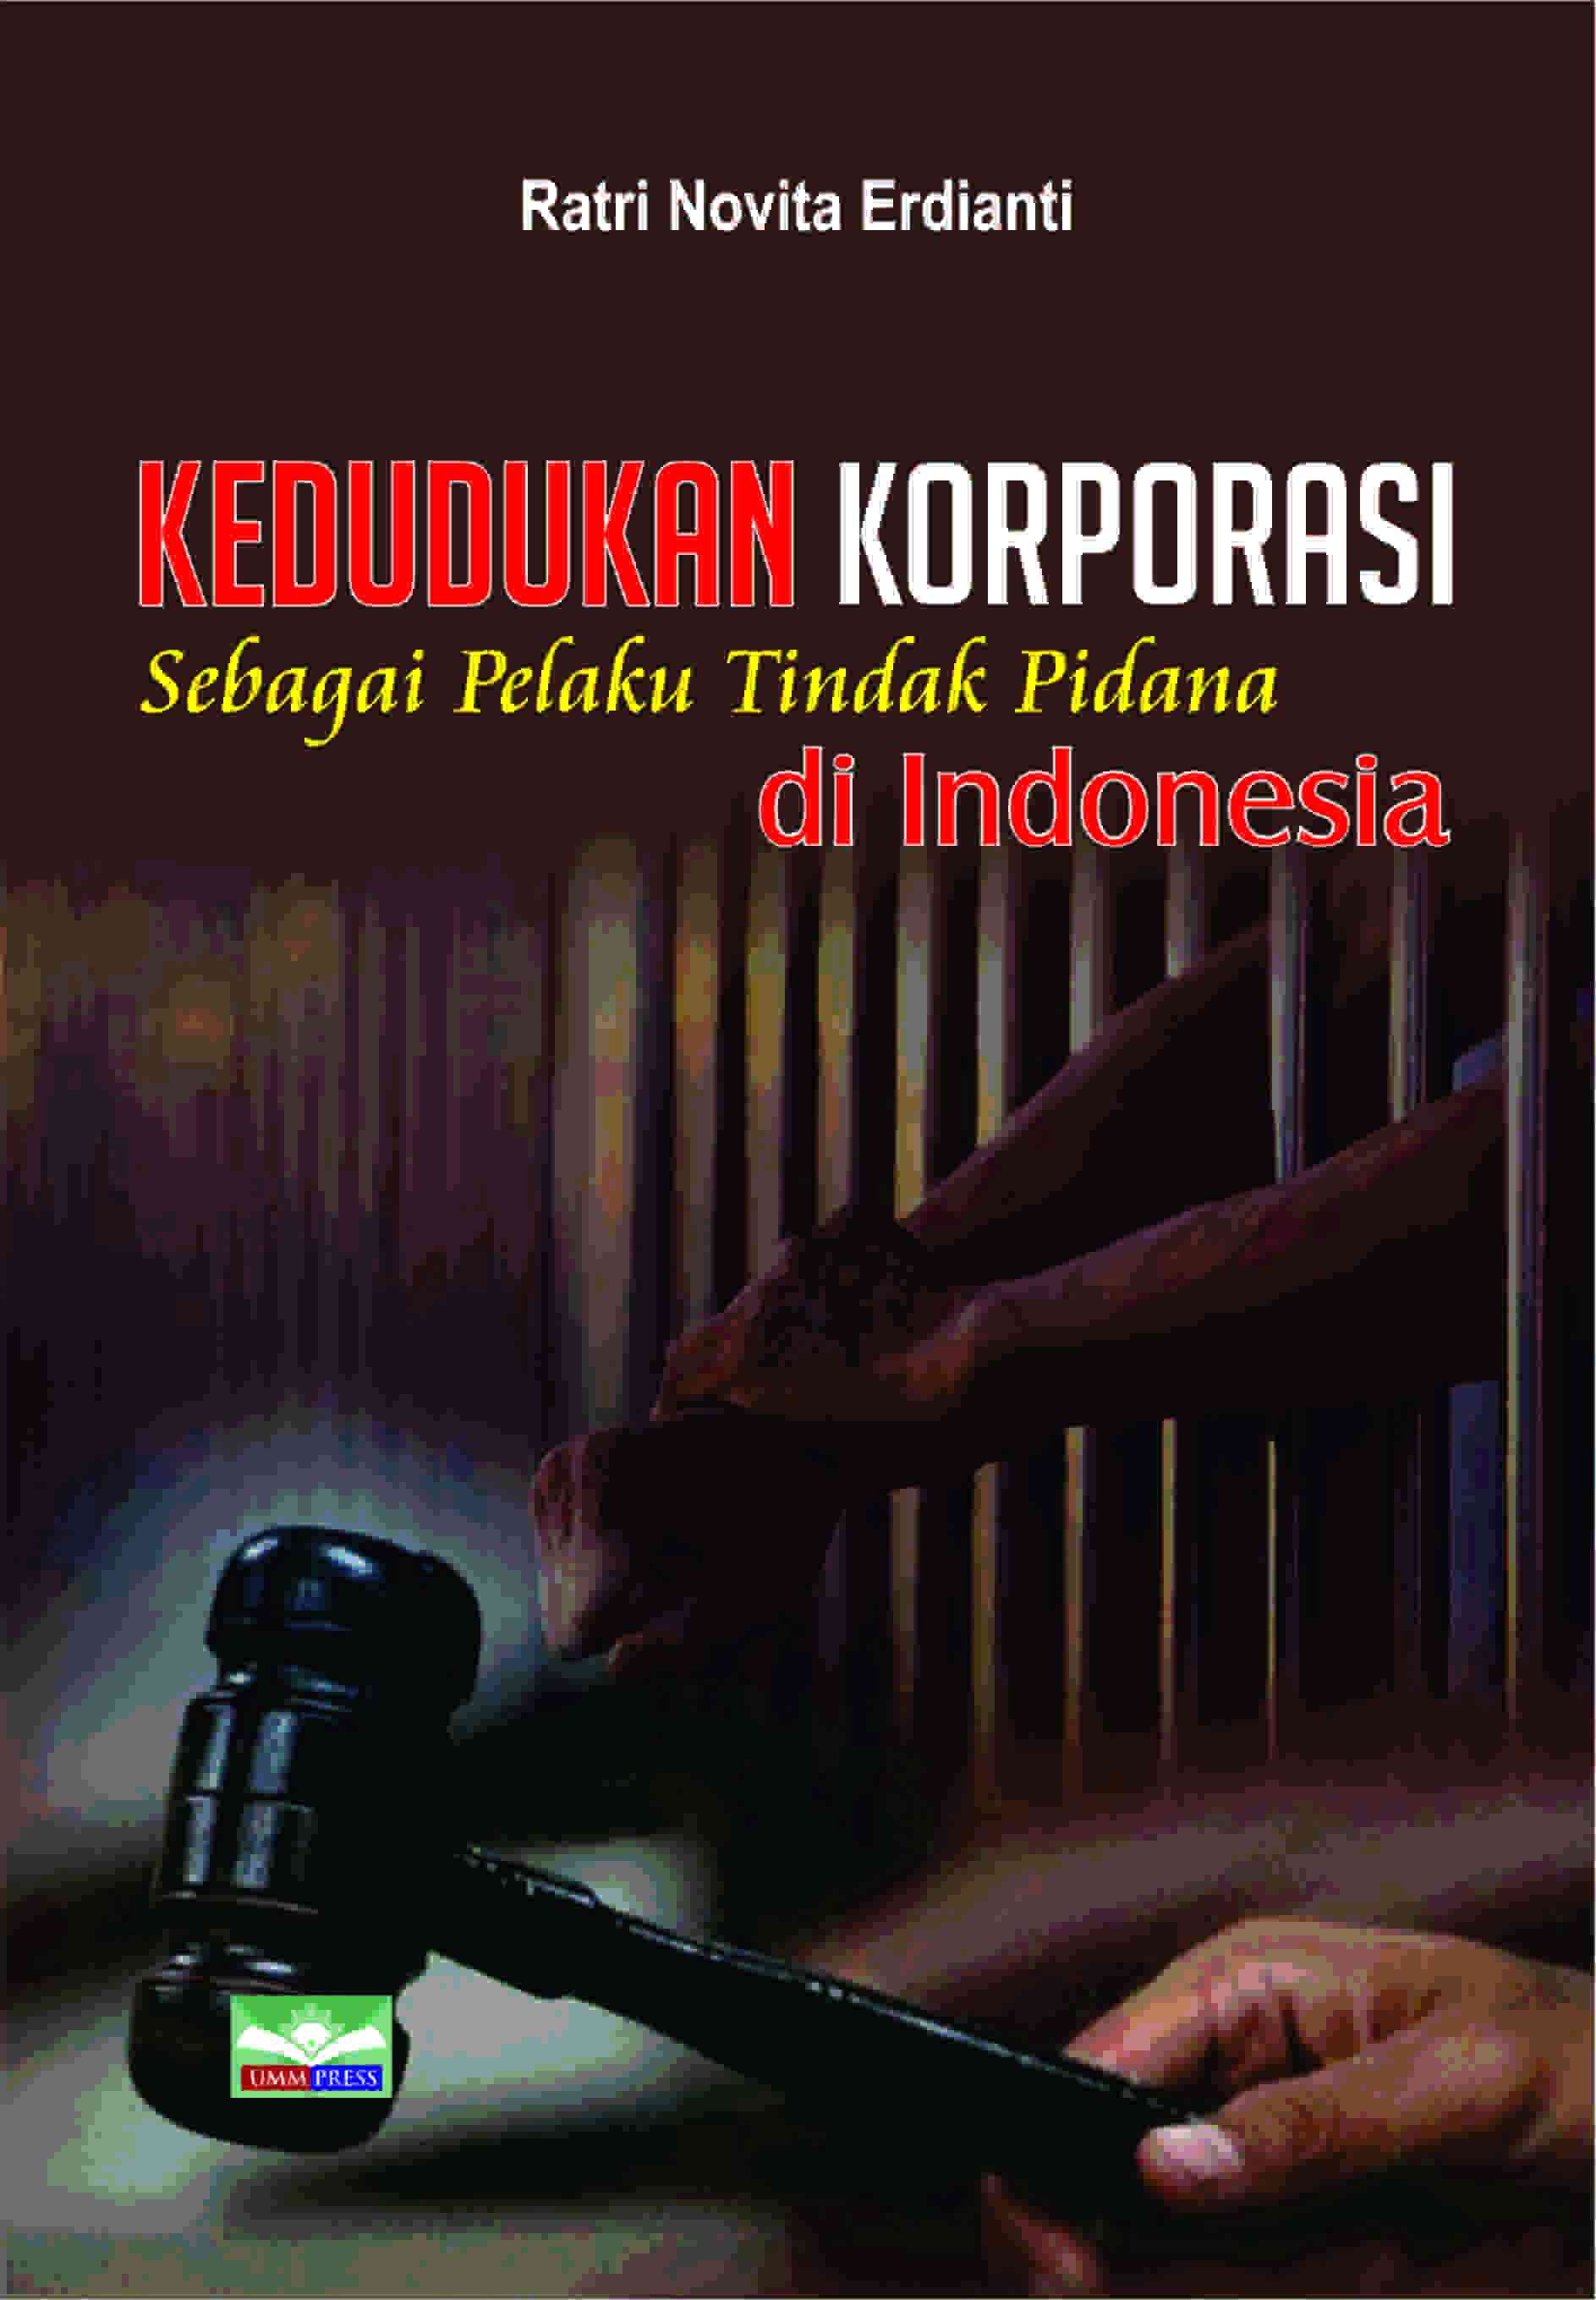 KEDUDUKAN KORPORASI SEBAGAI PELAKU TINDAK PIDANA DI INDONESIA